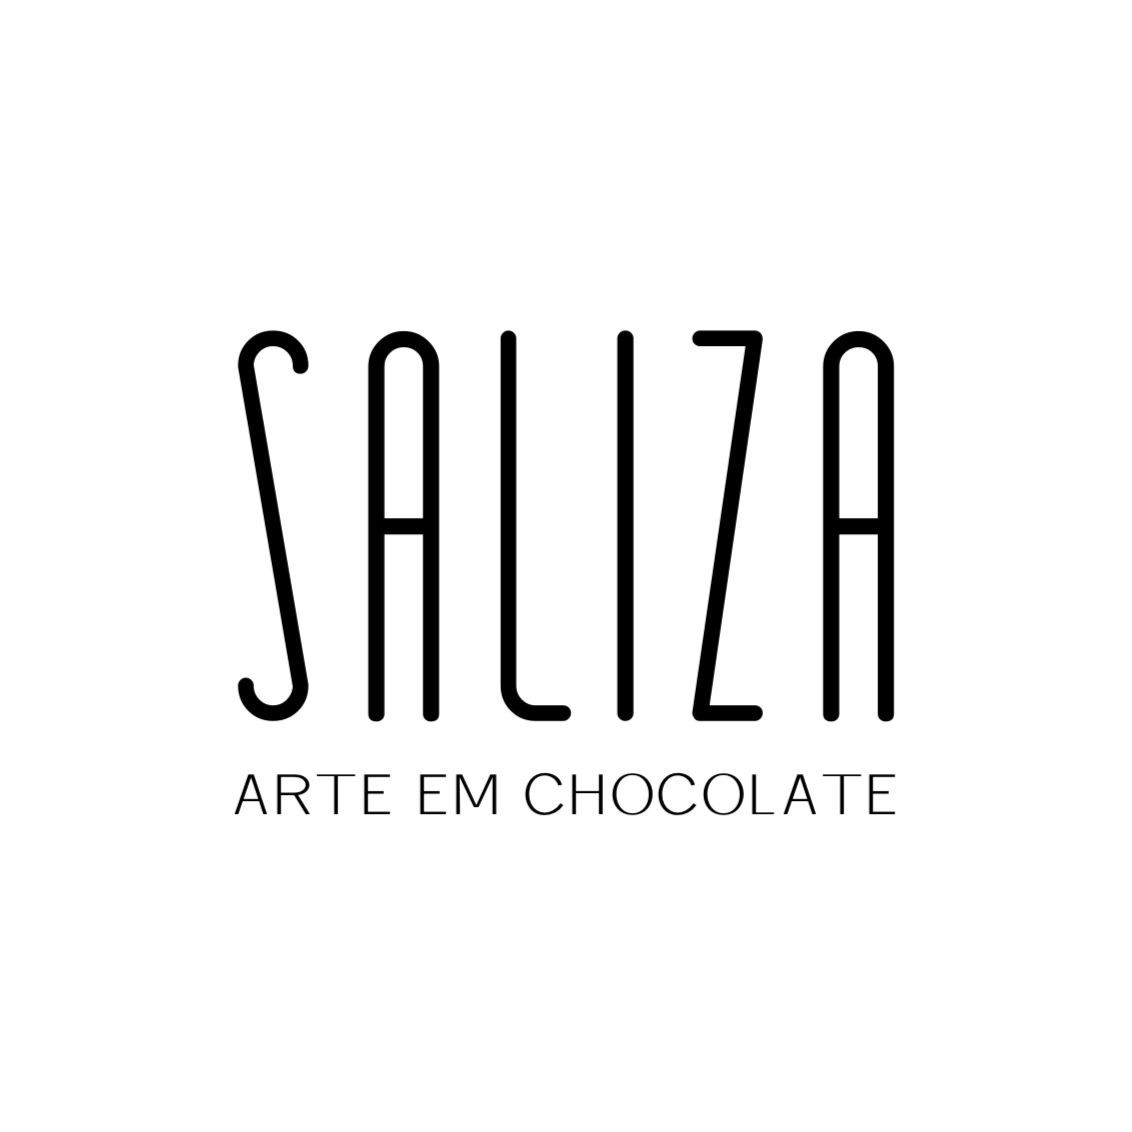 Saliza Arte em Chocolate 